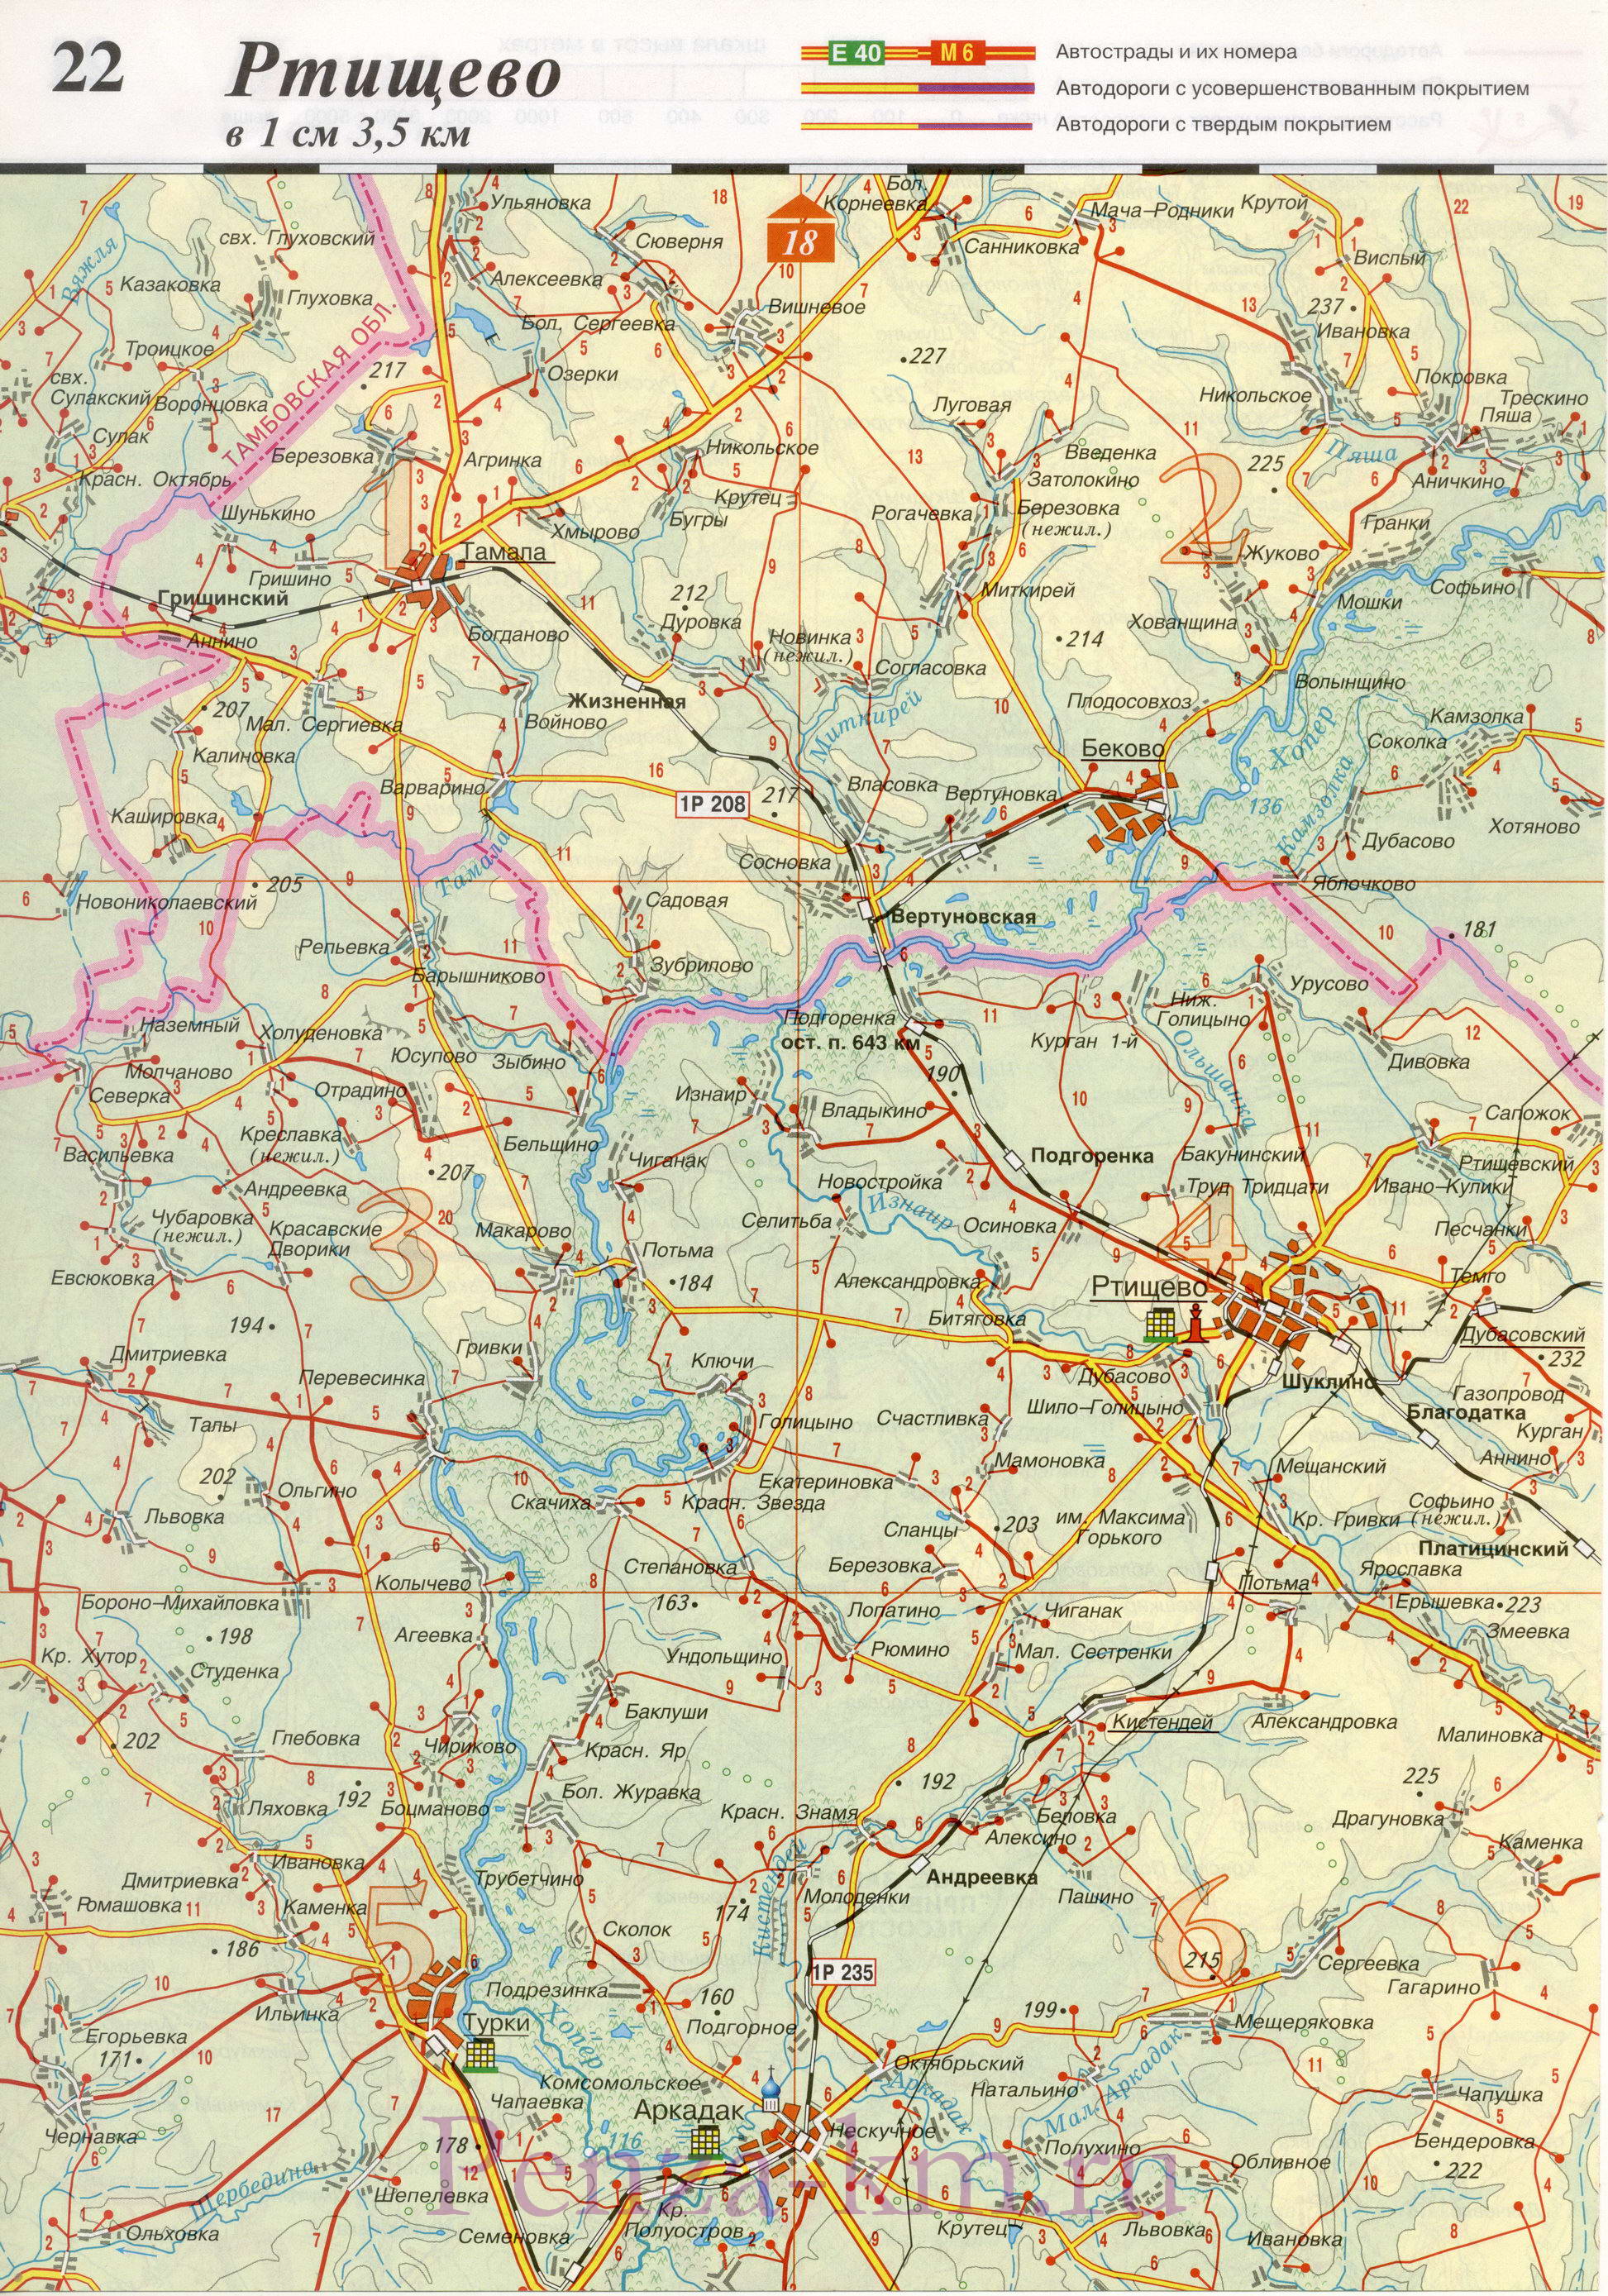  Пензенская область карта дорог. Подробная карта автодорог Пензенской области масштаба 1см:3,5км, B2 - 